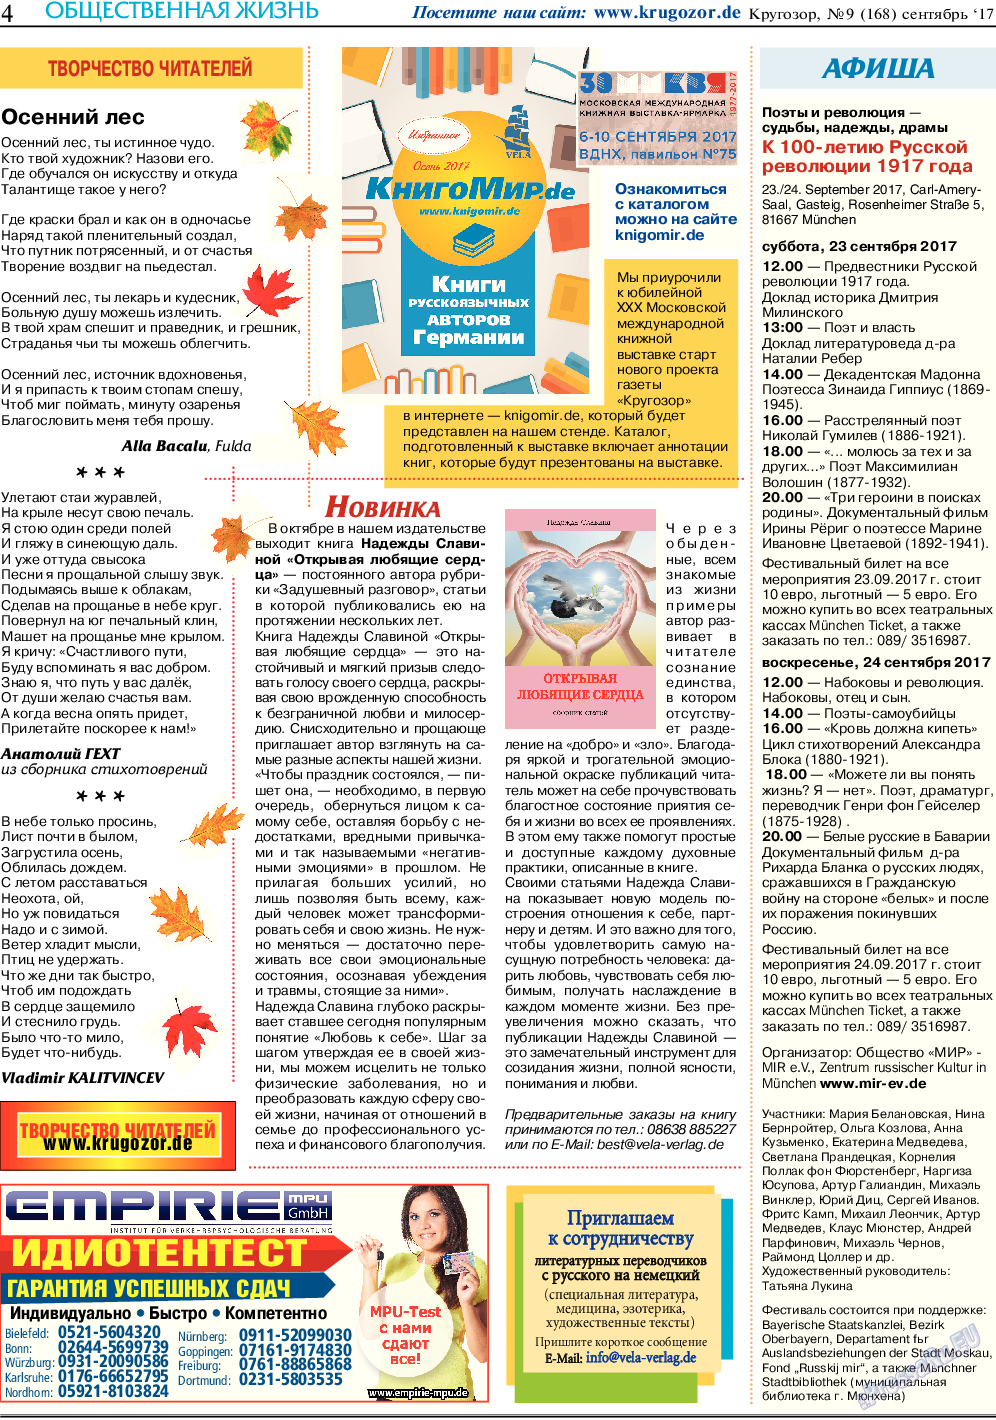 Кругозор, газета. 2017 №9 стр.4